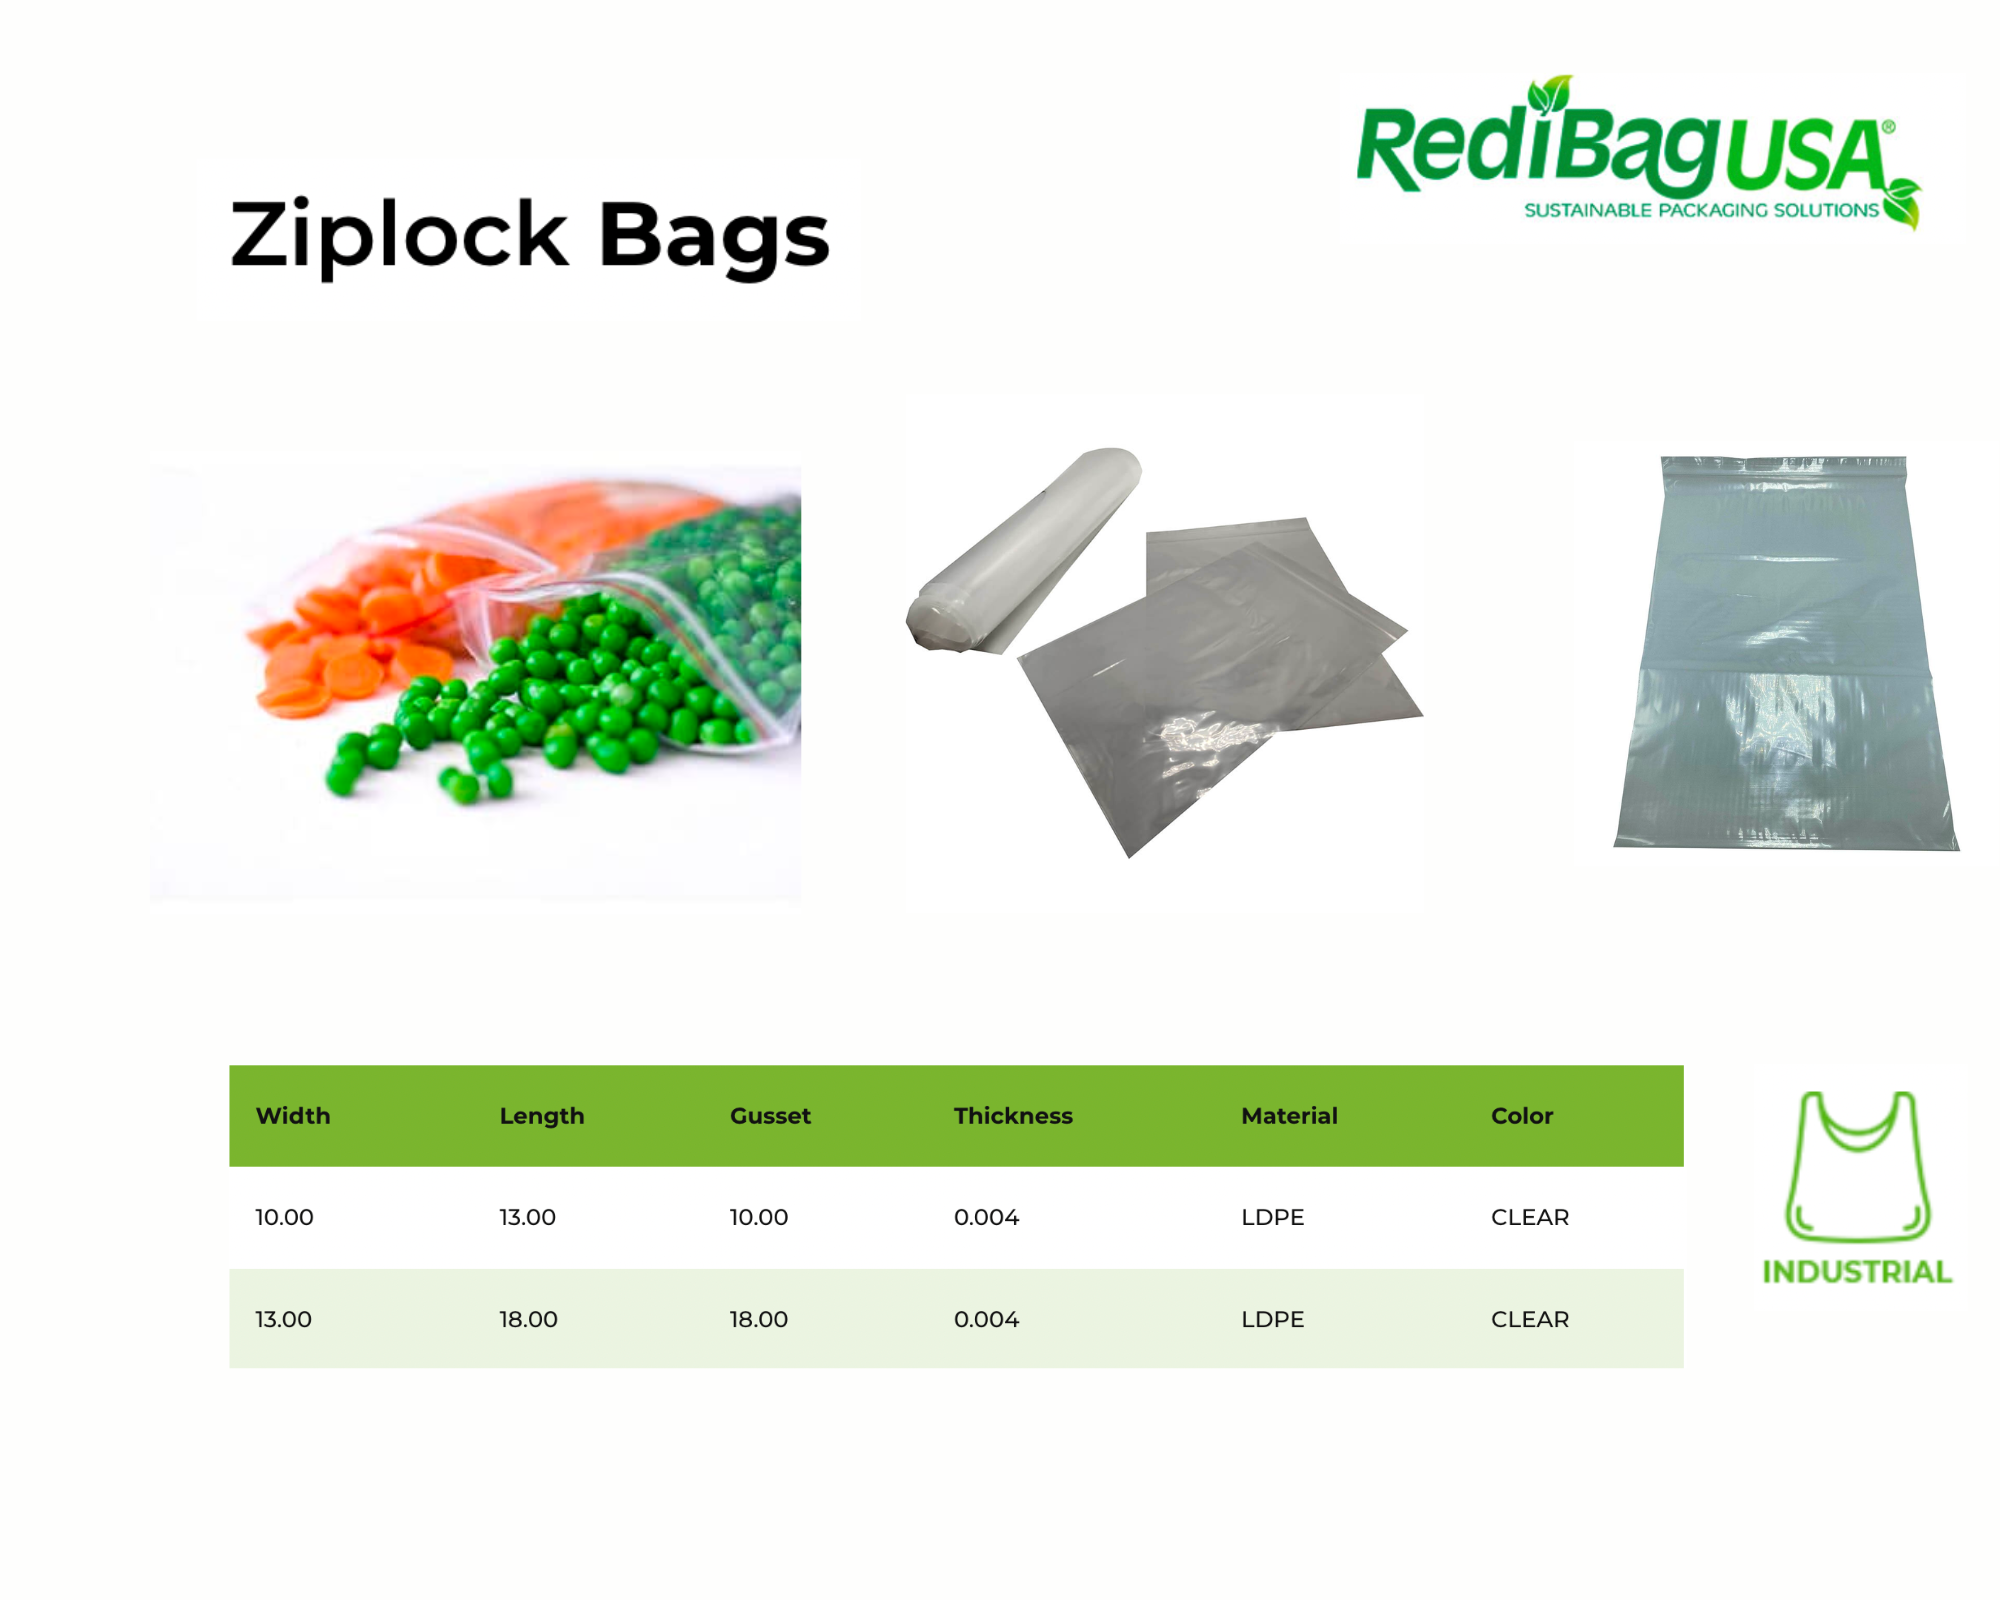 Top Zip Lock Bag Manufacturers - RediBagUSA